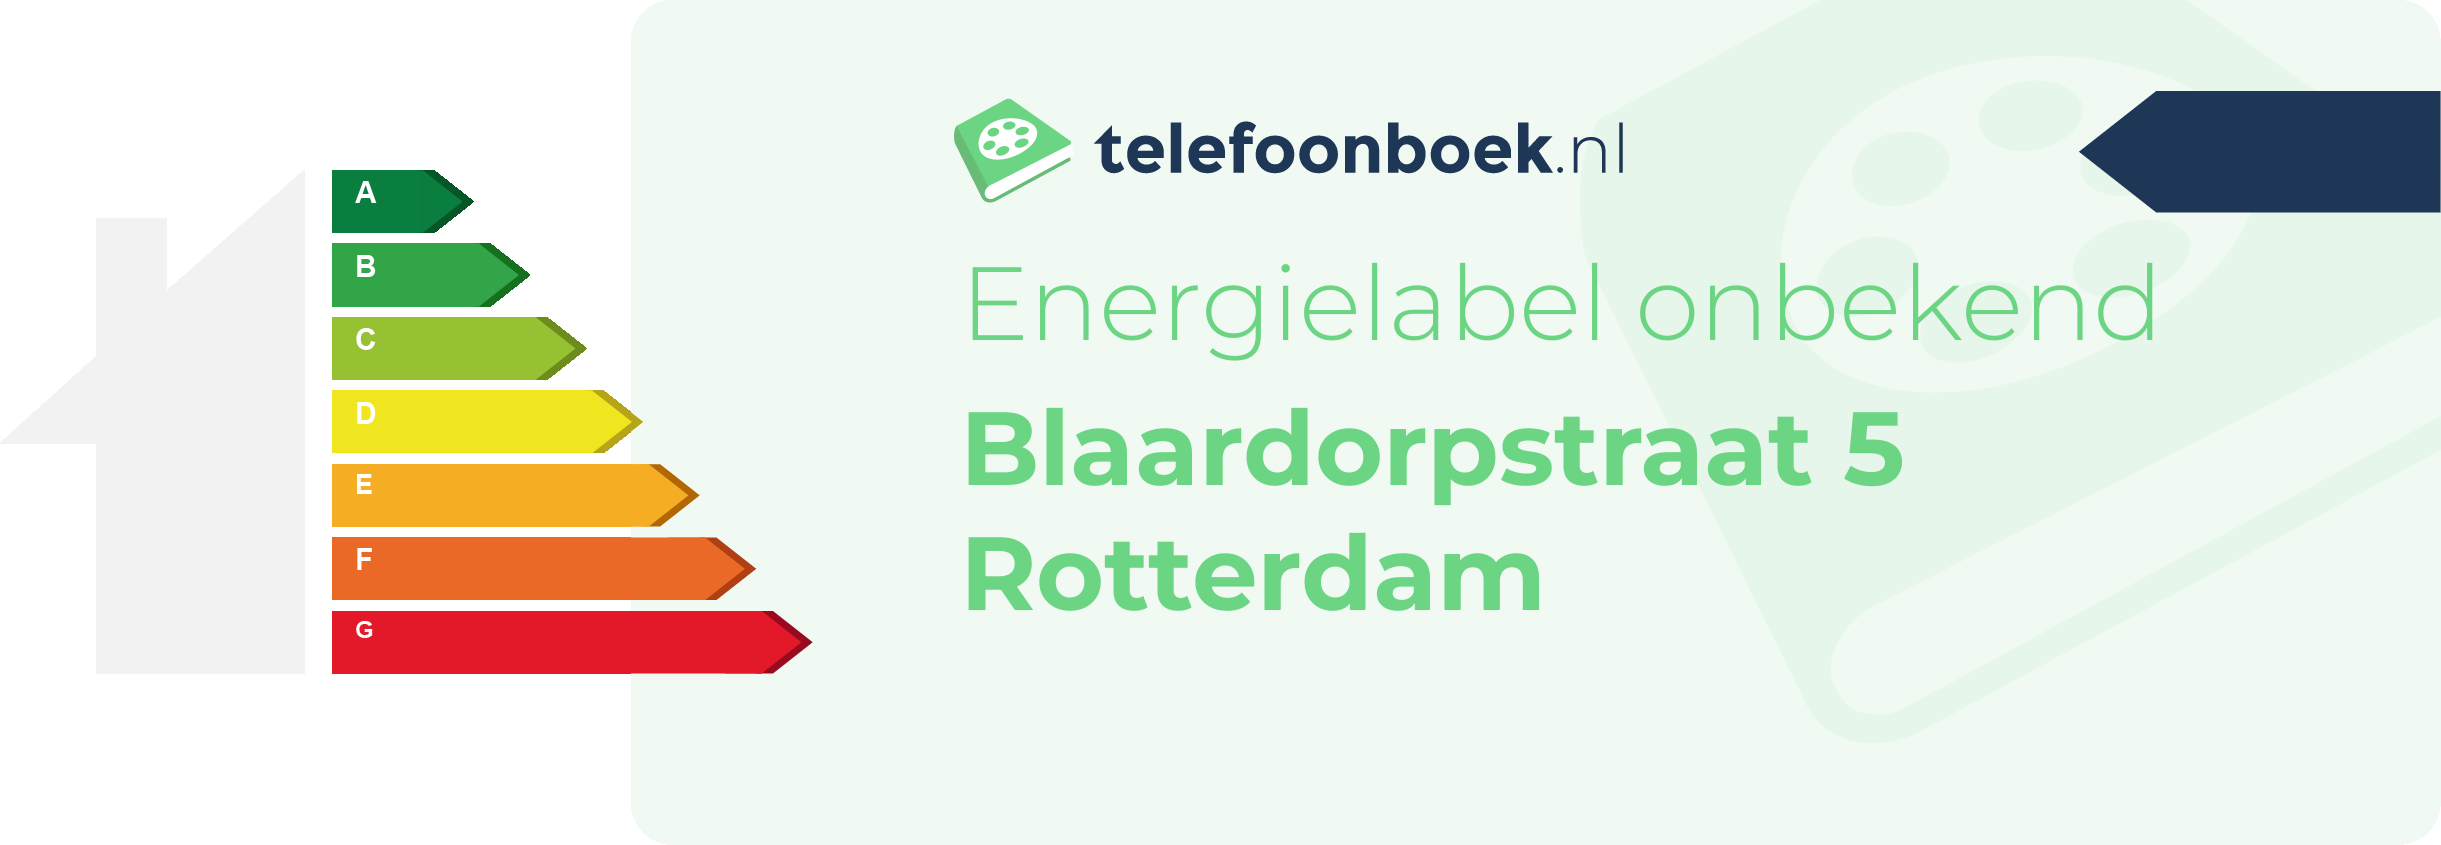 Energielabel Blaardorpstraat 5 Rotterdam